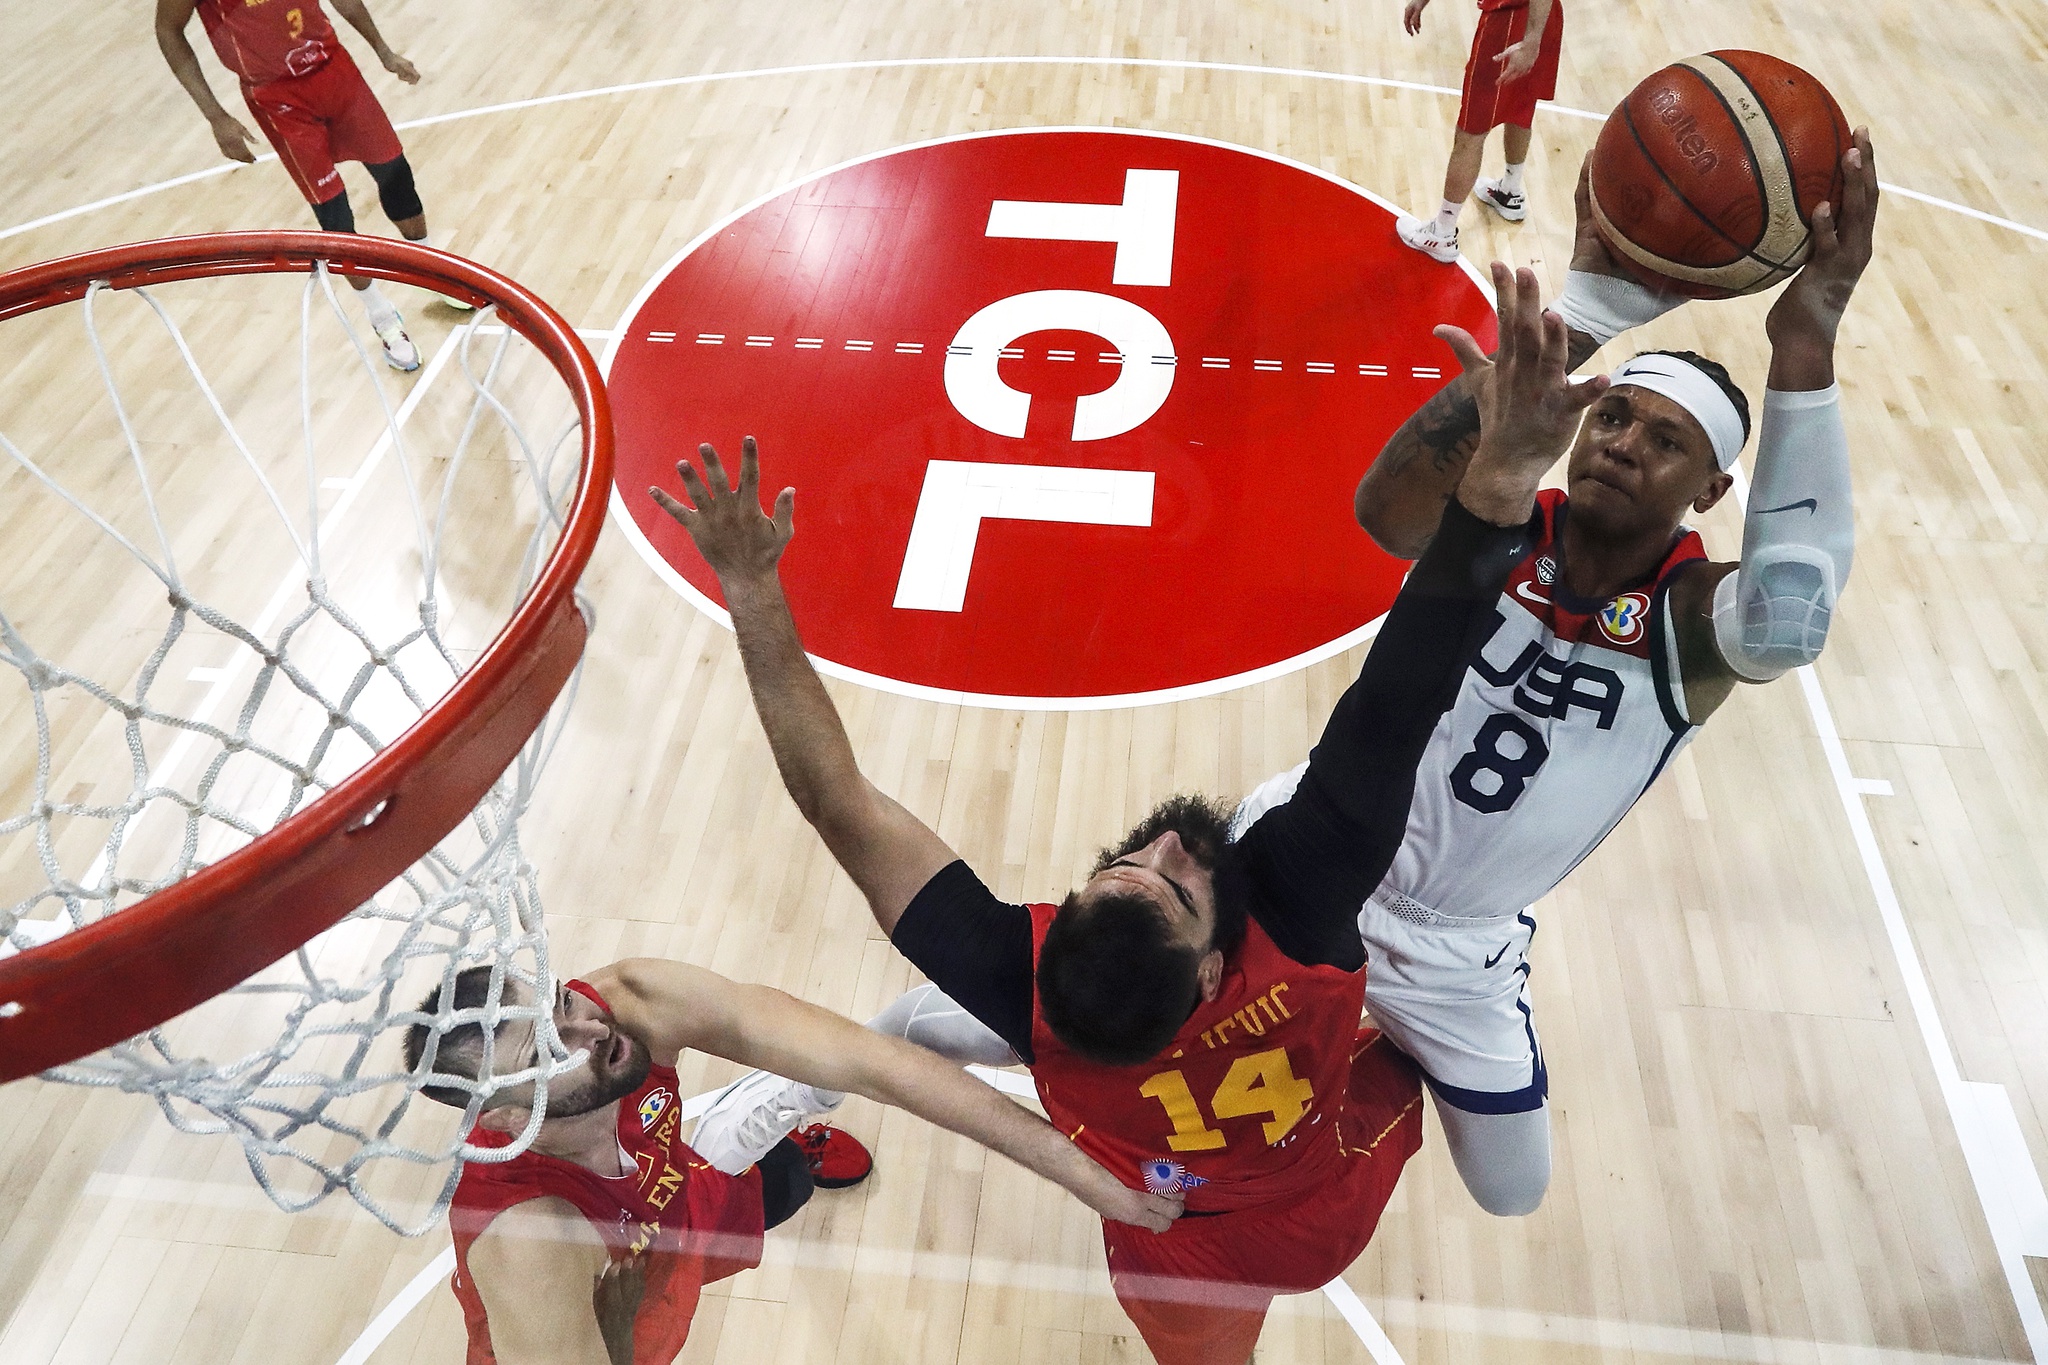 USA, Litauen, Slowenien und Deutschland im „Viertel“ der Basketball-Weltmeisterschaft |  Basketball